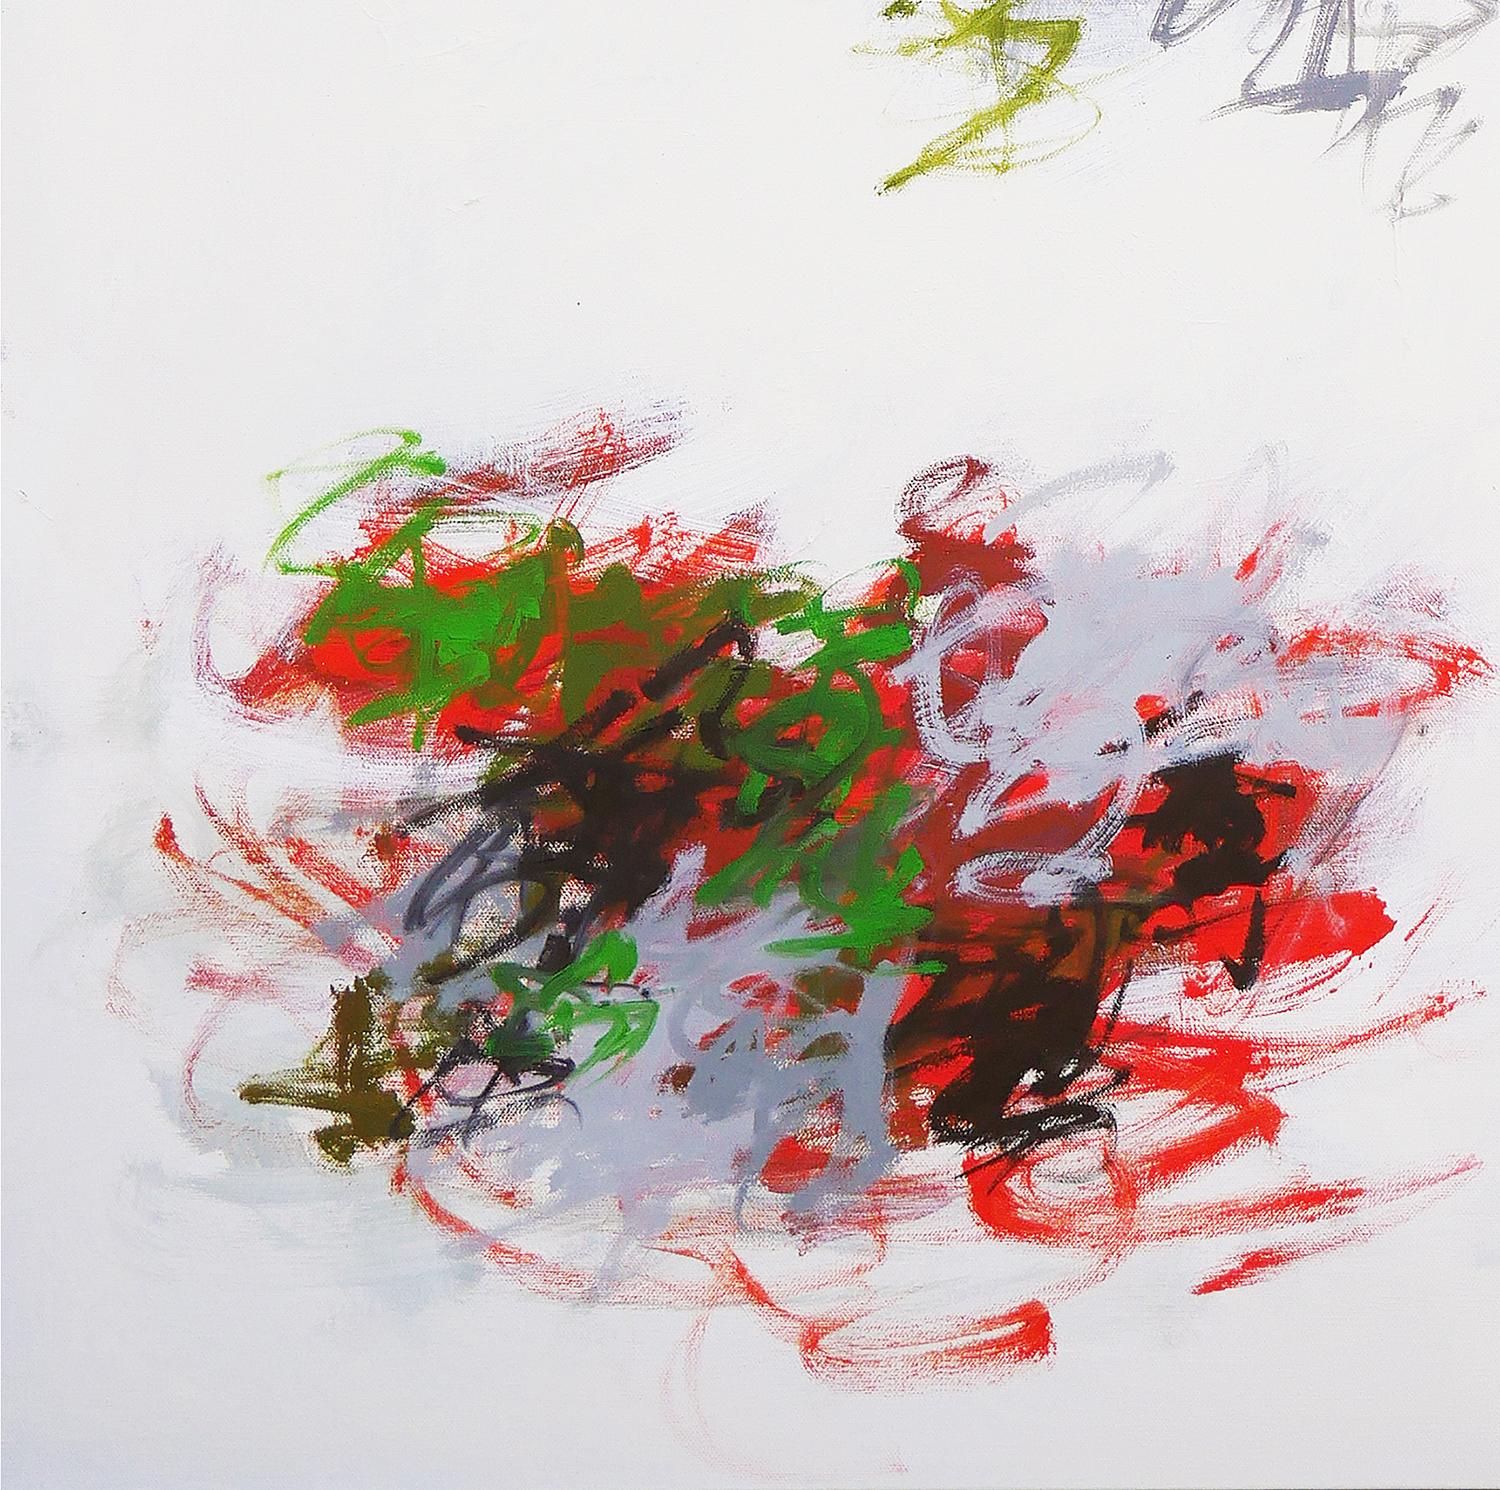 Rotes, schwarzes und grünes abstraktes expressionistisches Gemälde des texanischen Künstlers Gerald Syler. Das Werk zeichnet sich durch eine ausgewogene Komposition aus großen, farbigen Pinselstrichen auf der Leinwand aus. Rückseitig vom Künstler